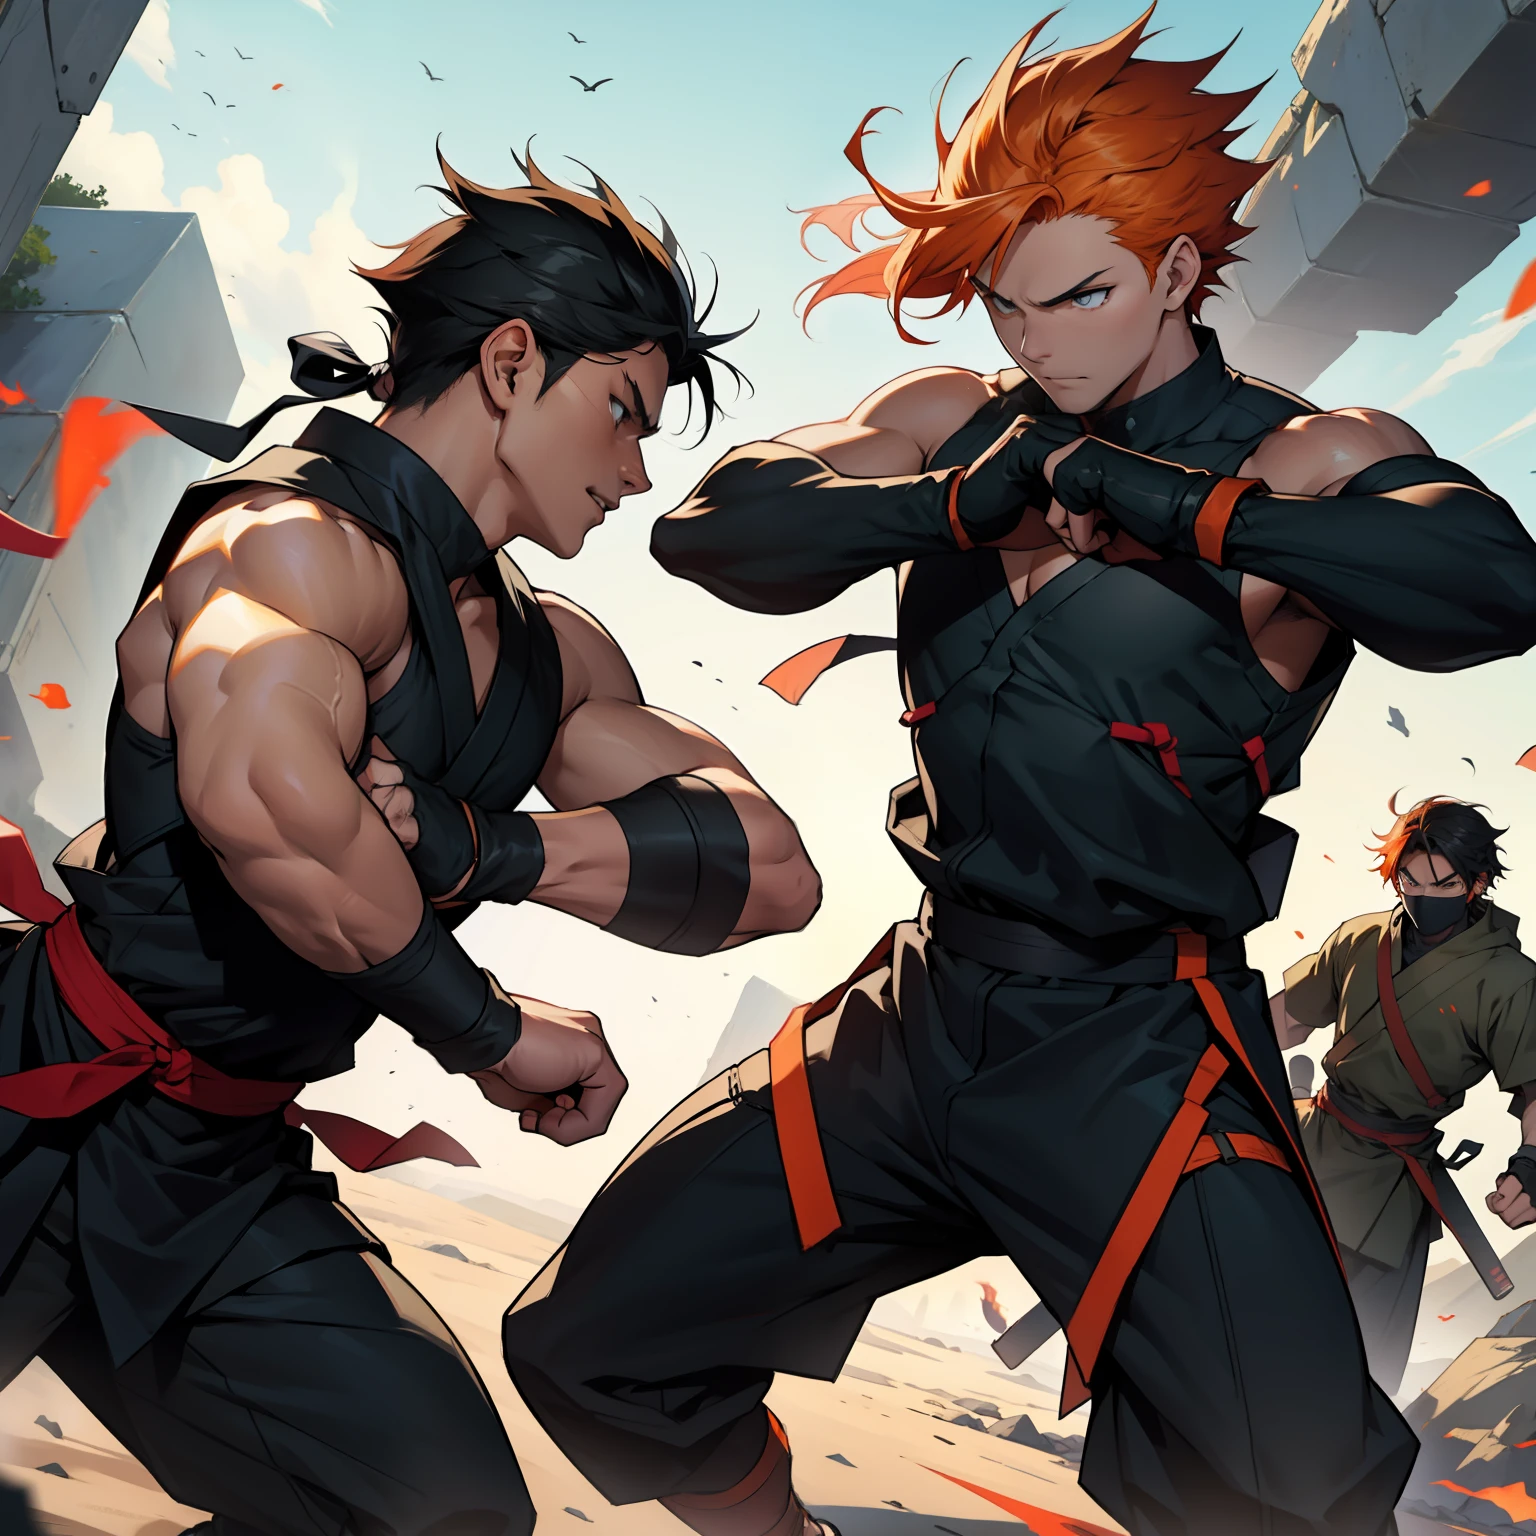 Scène de bataille entre deux ninjas de 15 ans aux cheveux orange et les autres cheveux noirs